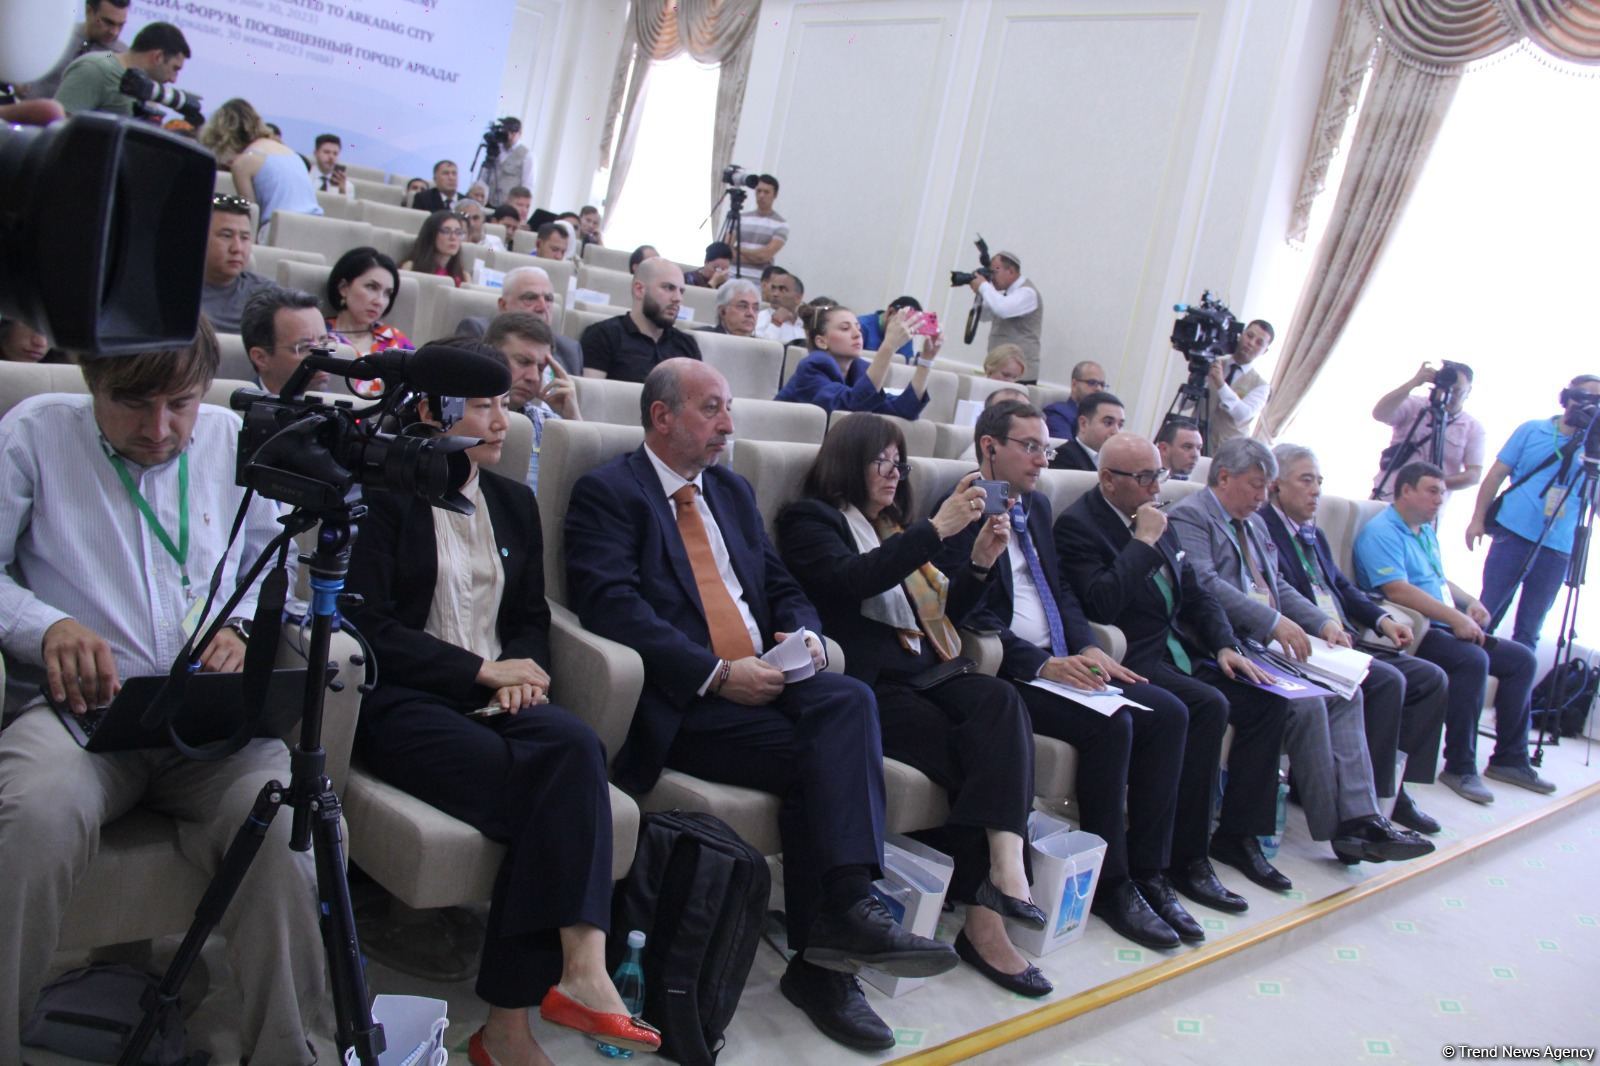 Состоялся международный медиа-форум, посвященный первому смарт-городу Туркменистана Аркадаг (ФОТО)